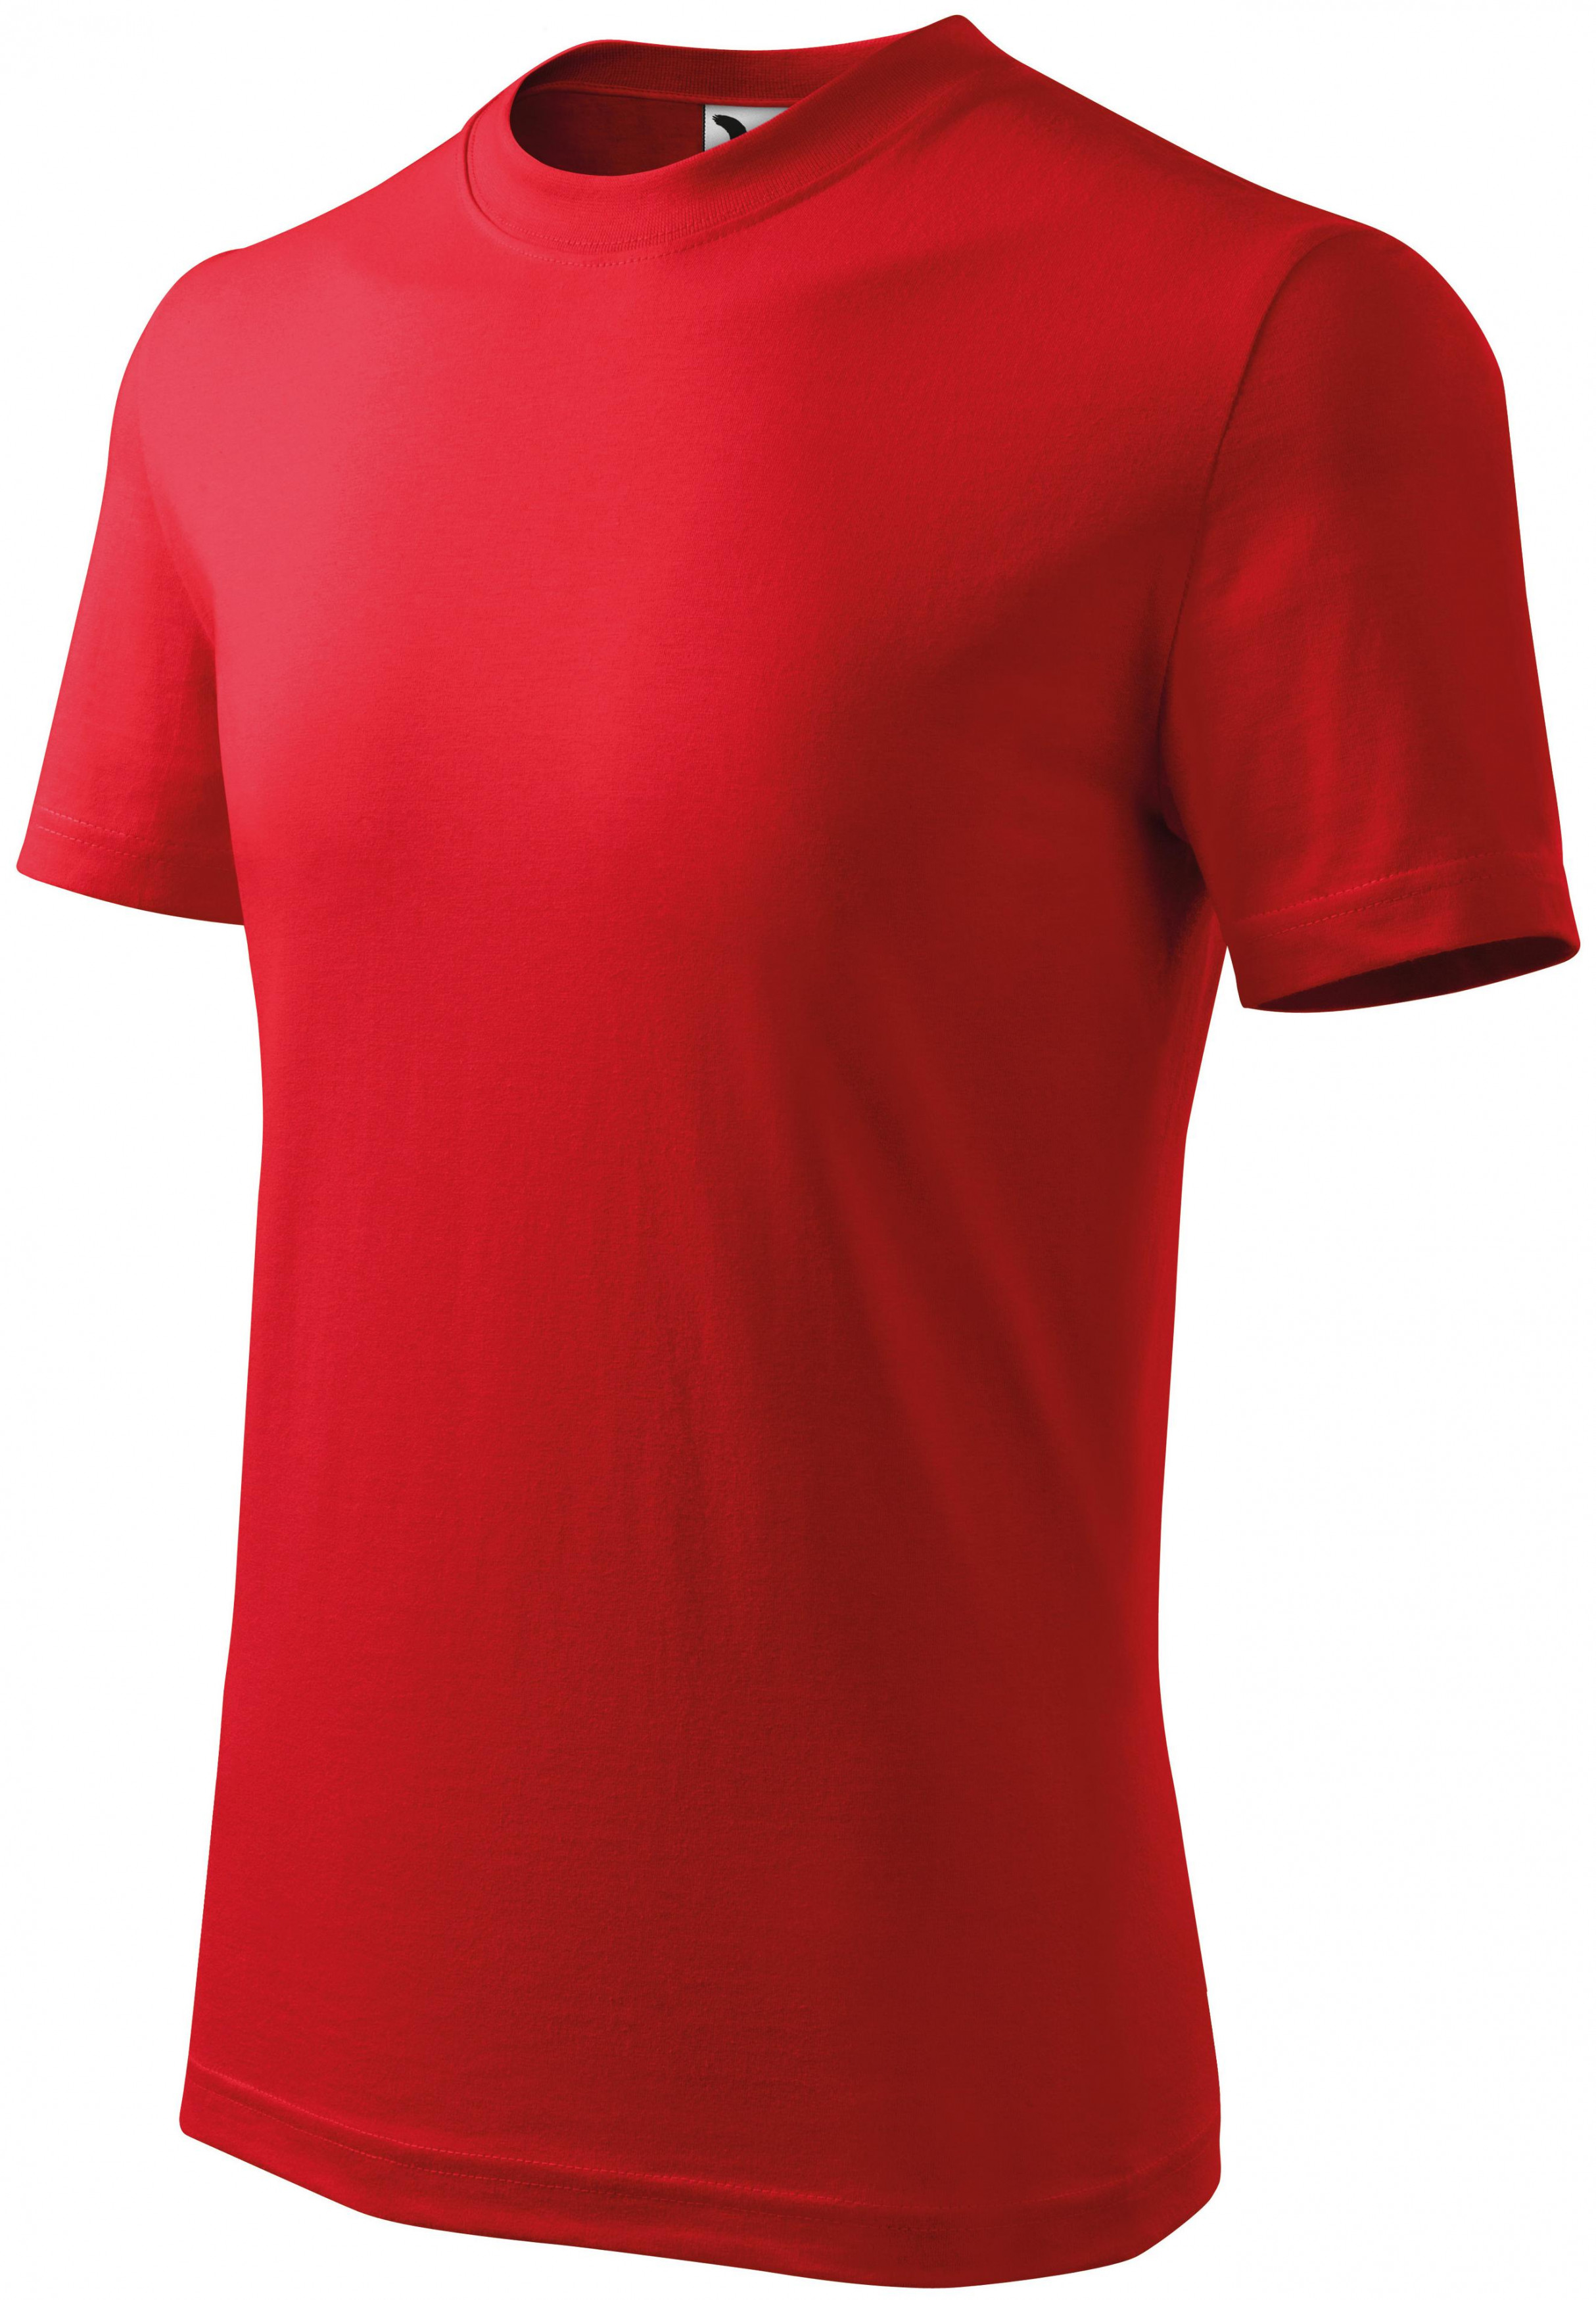 Detské tričko jednoduché, červená, 158cm / 12rokov